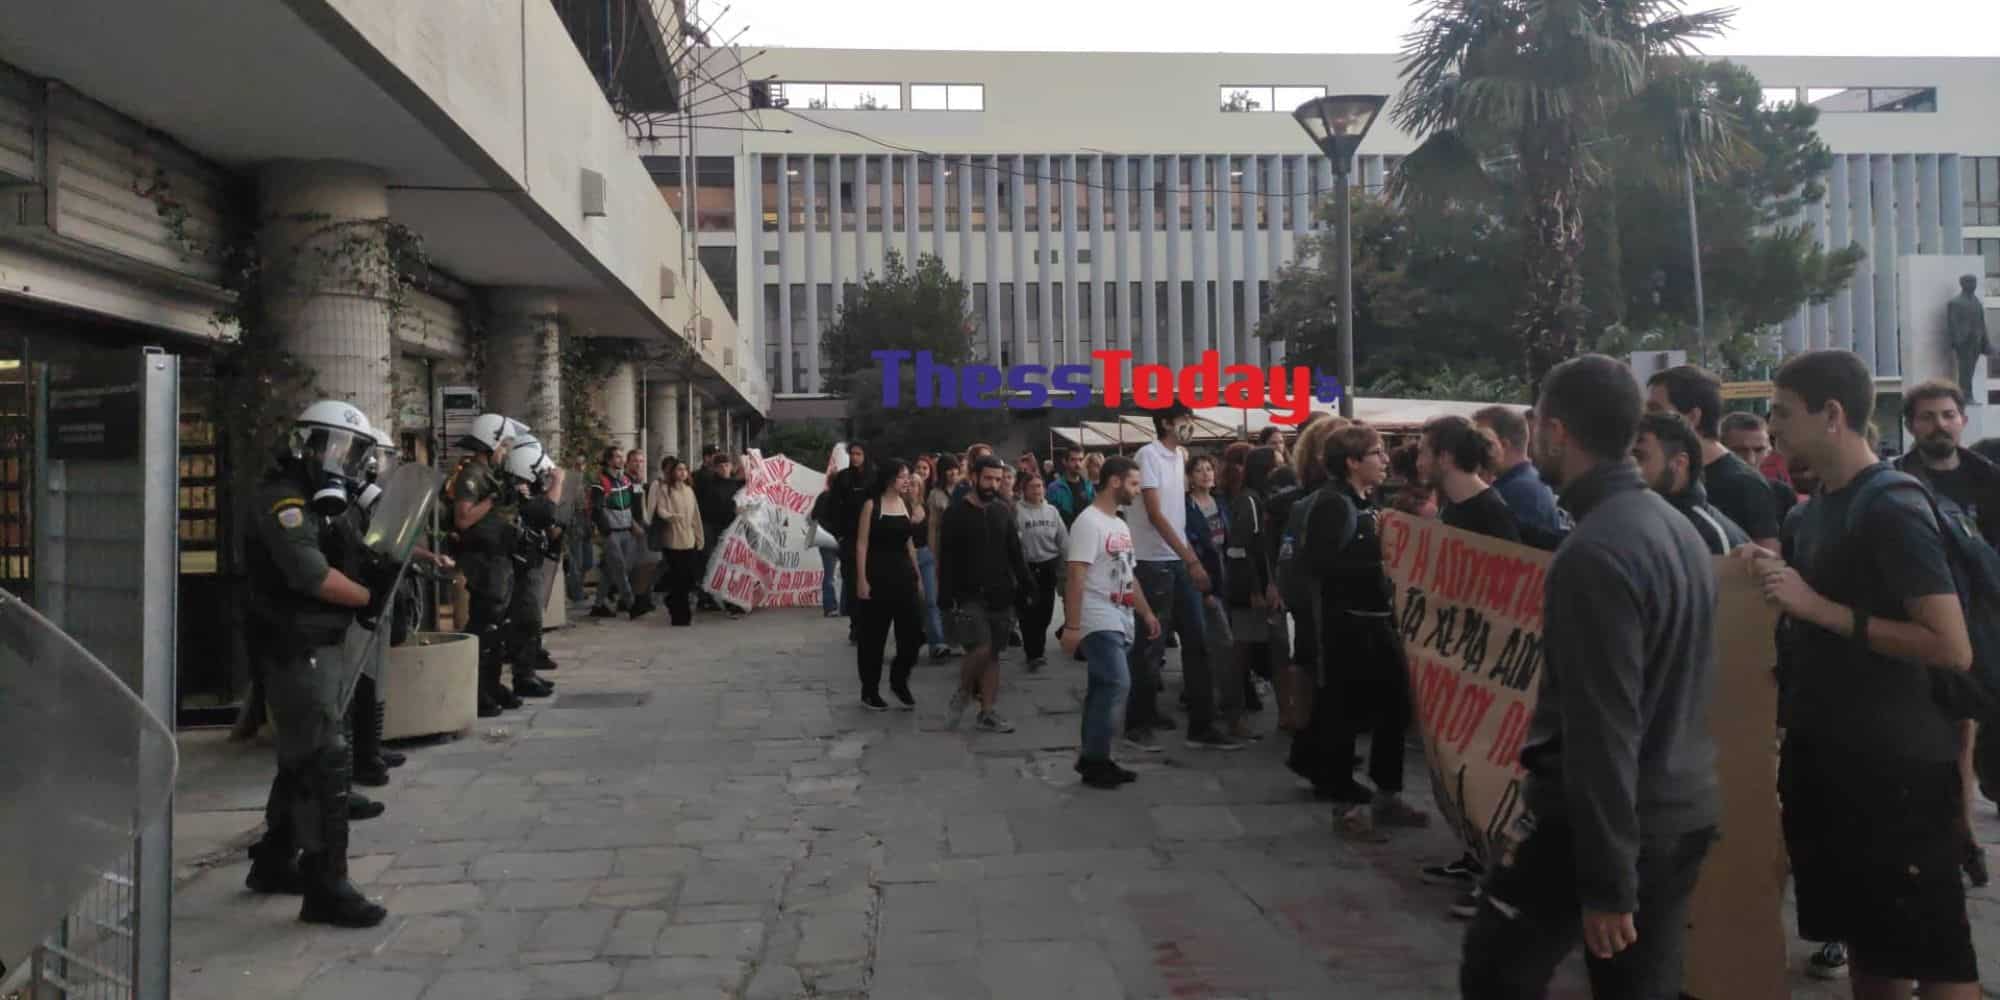 Diamartyria apth 15 9 22 - Θεσσαλονίκη: Στην πρυτανεία του ΑΠΘ φοιτητές - Διαμαρτύρονται για την Πανεπιστημιακή Αστυνομία (εικόνα & βίντεο)